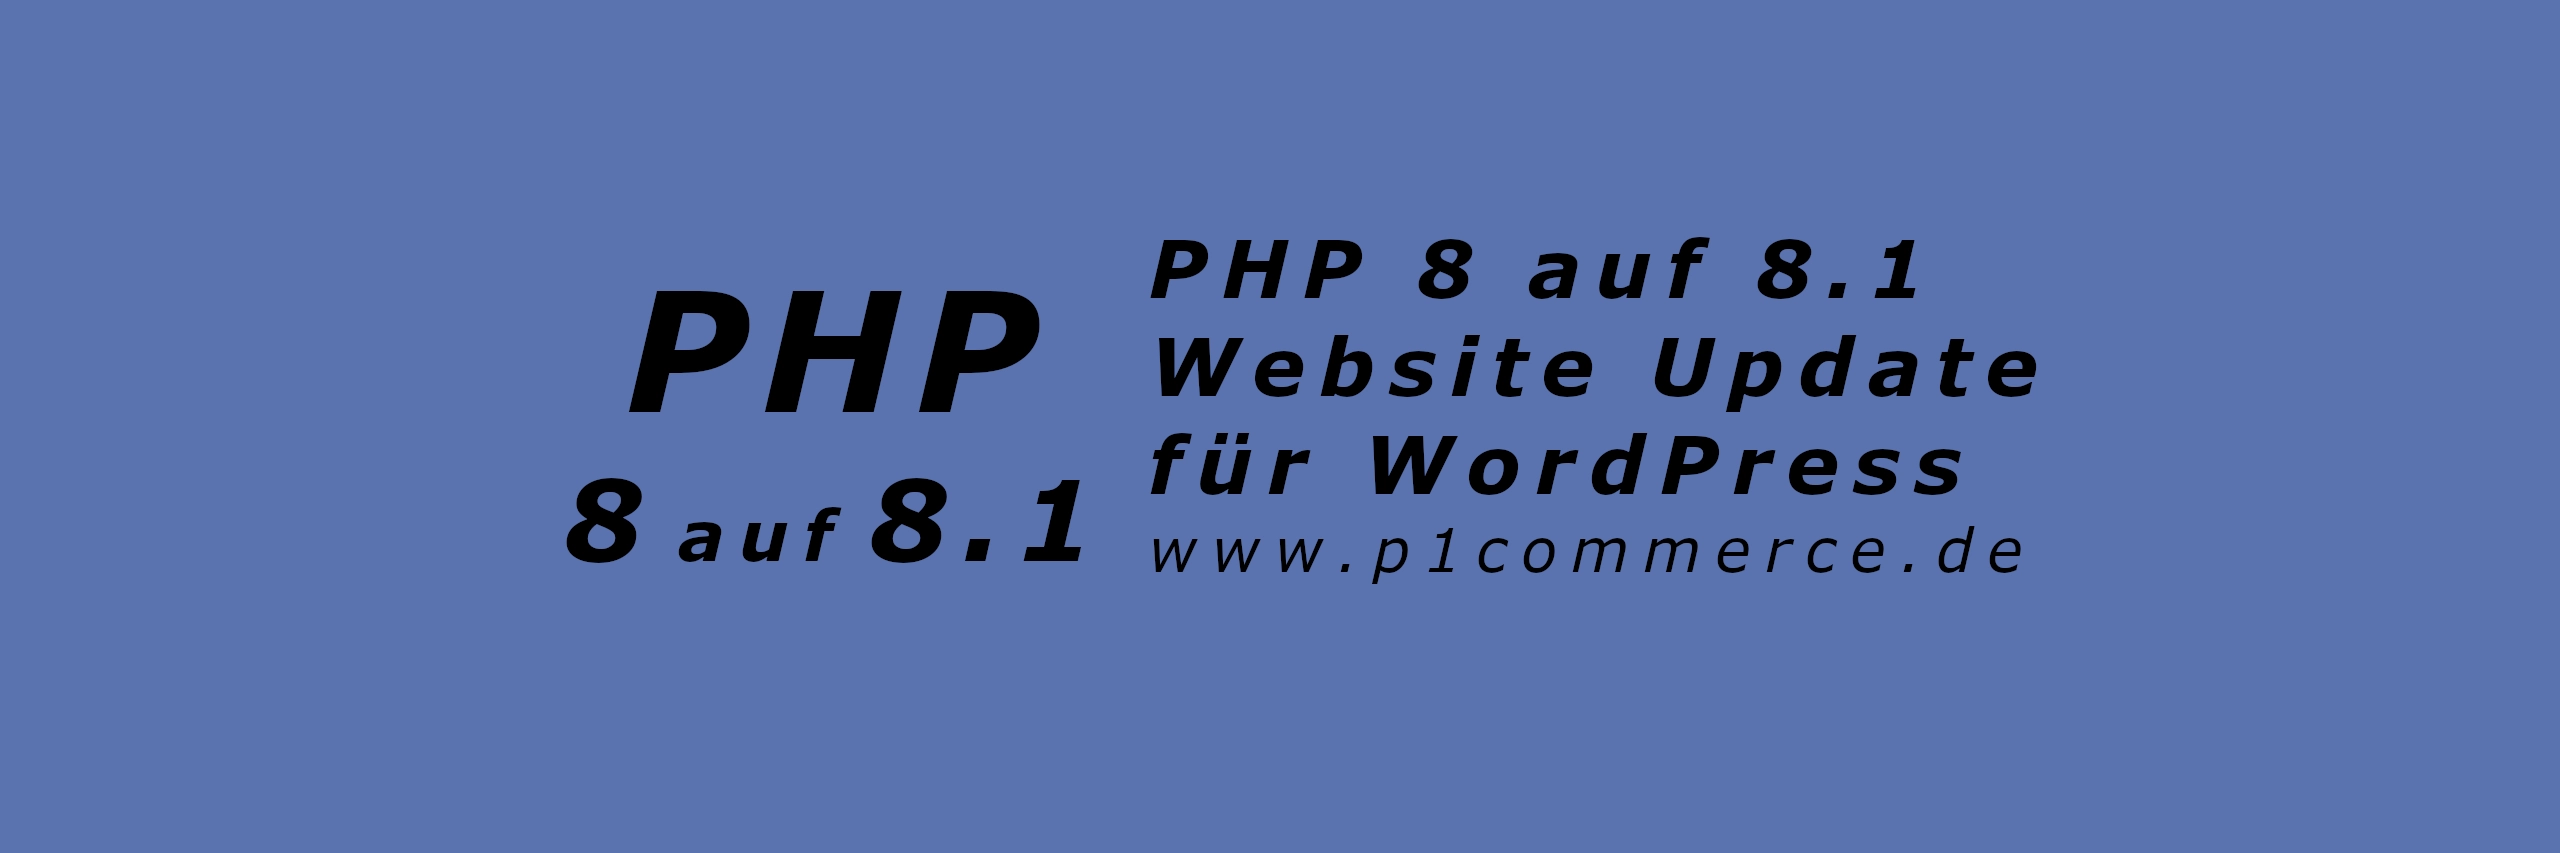 PHP 8 auf 8.1 Website Update fuer WordPress